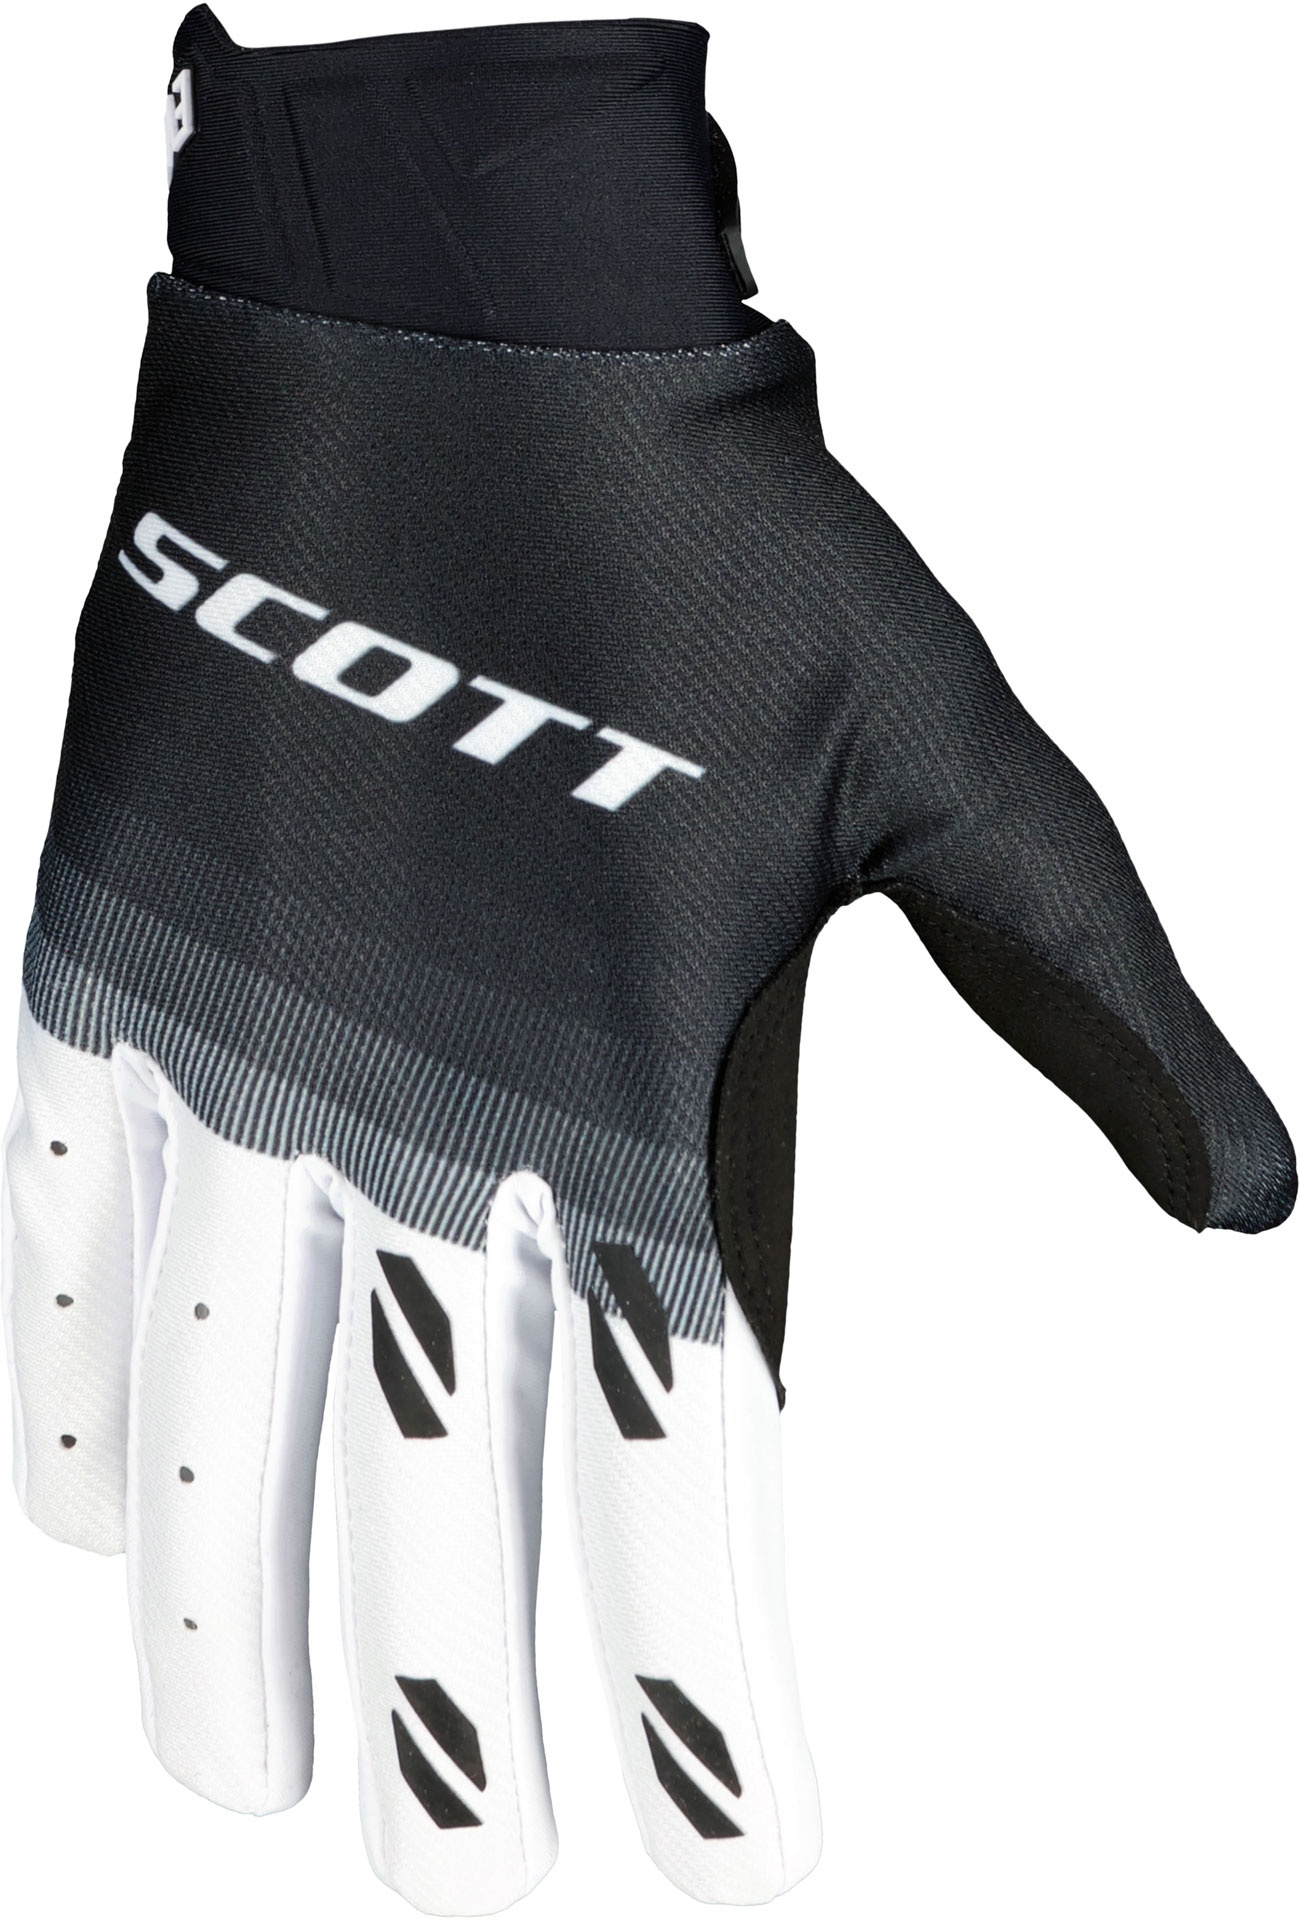 Scott Evo Fury S24, gants - Noir/Blanc - S